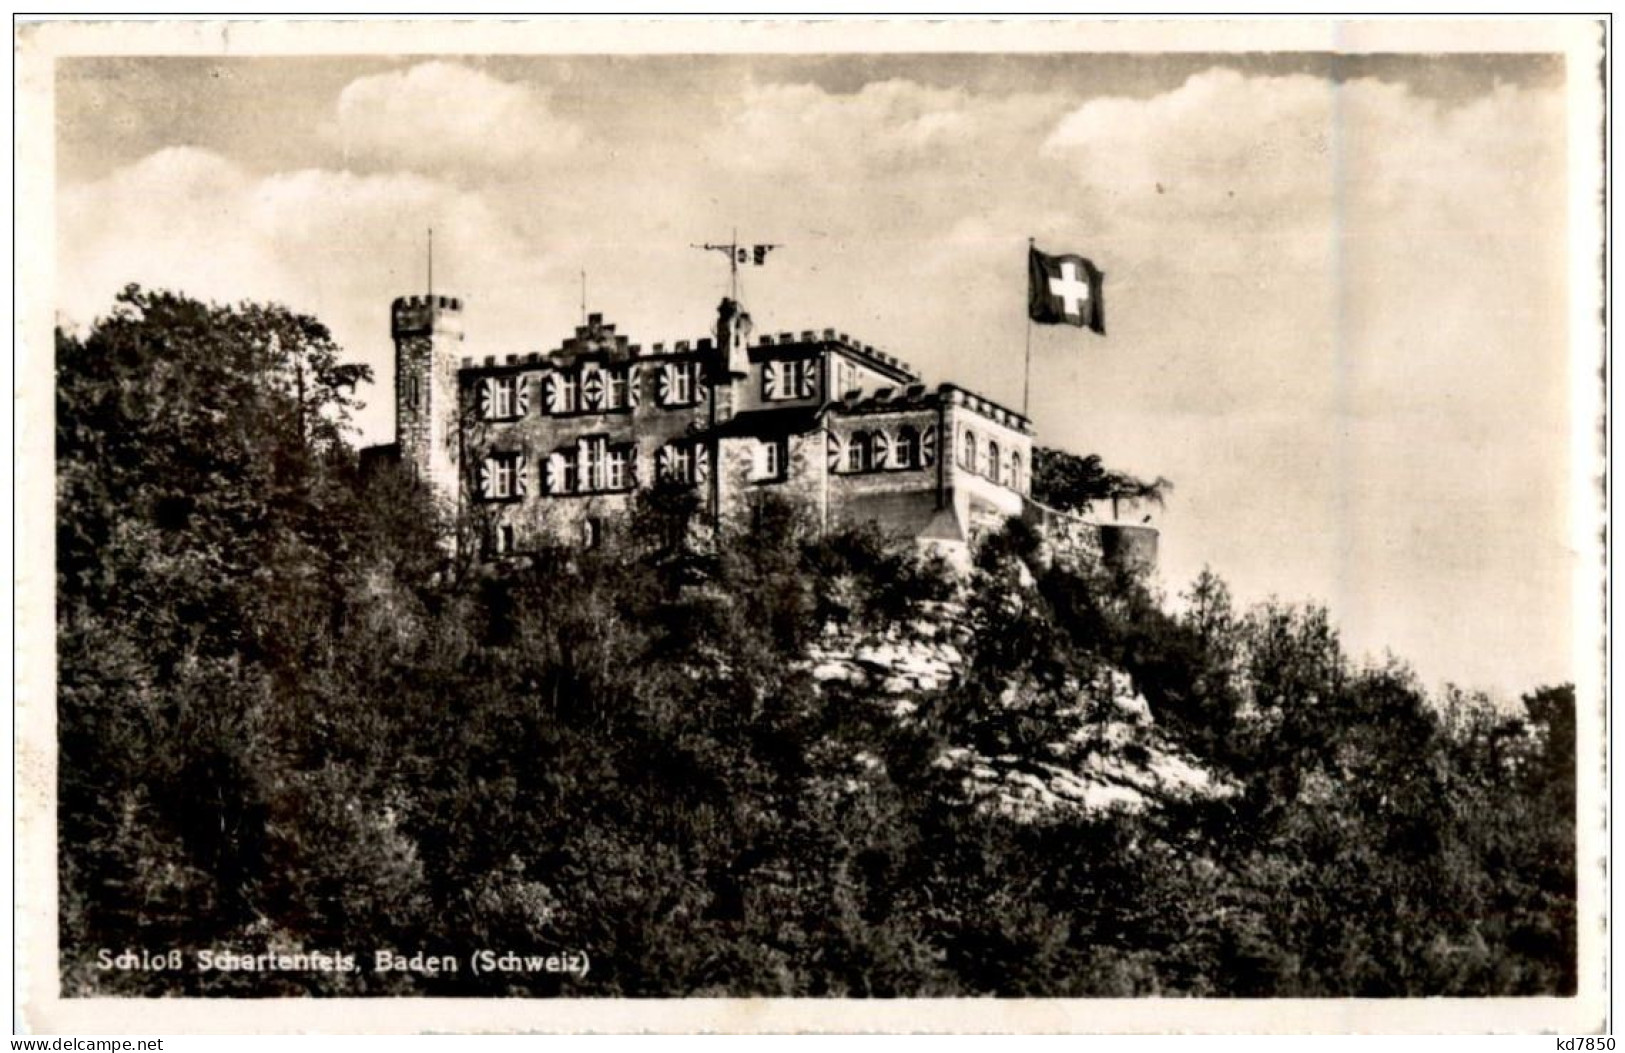 Baden - Schloss Schartenfels - Baden